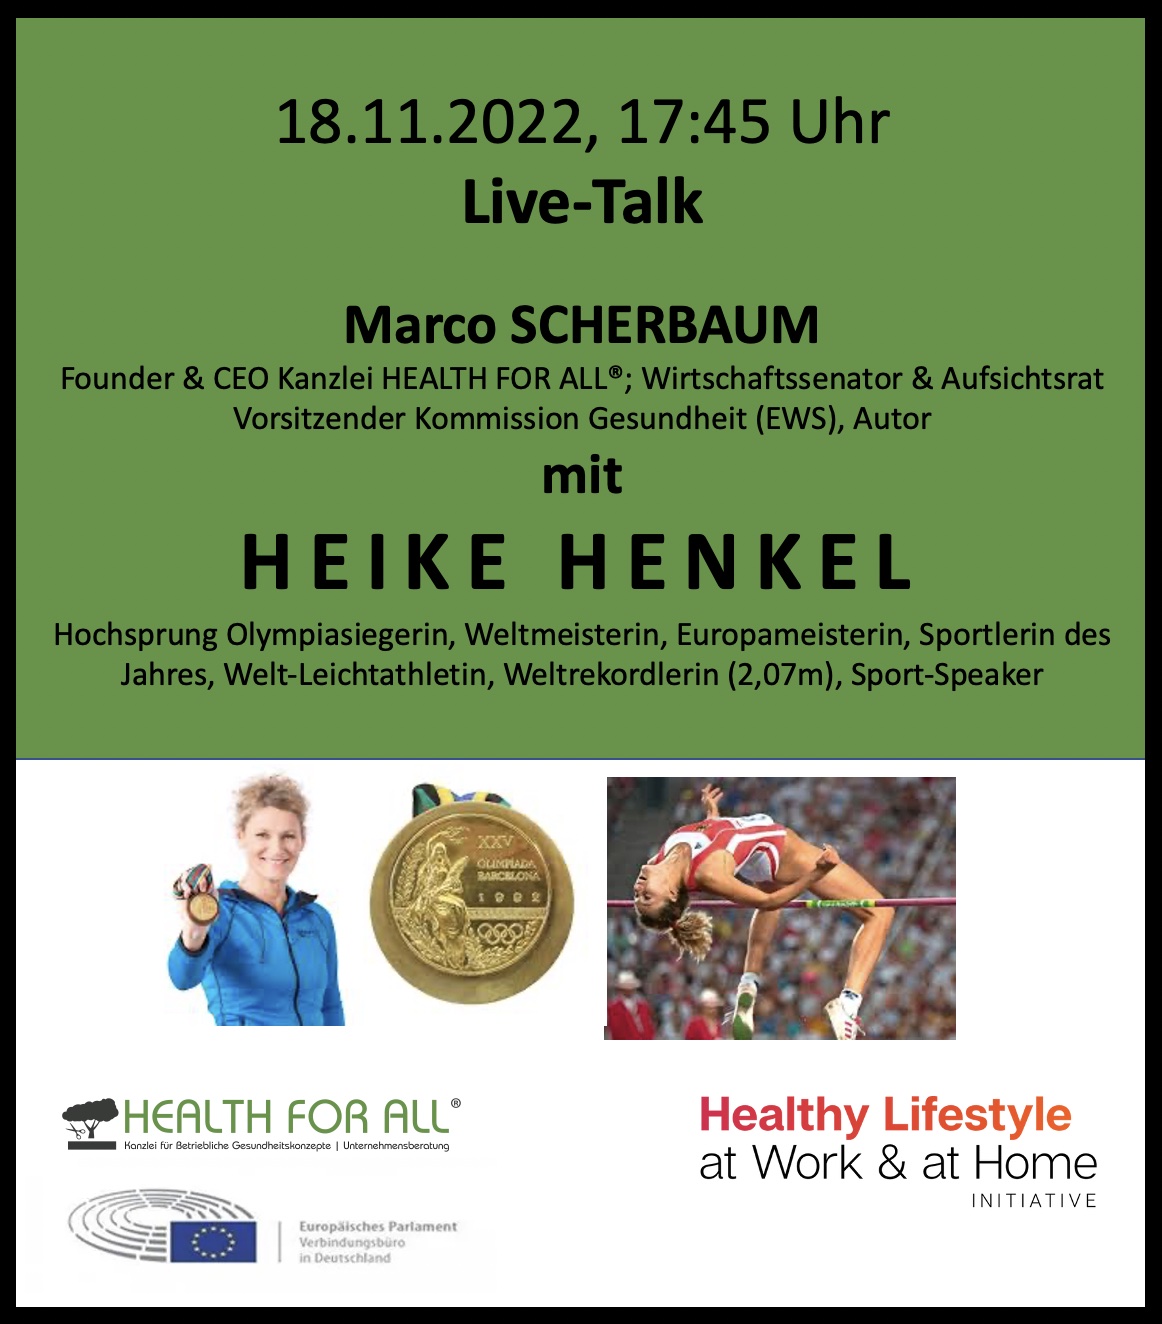 LiveTalk Marco Scherbaum & Heike Henkel, Healthy Lifestyle at Work & at Home Initiative